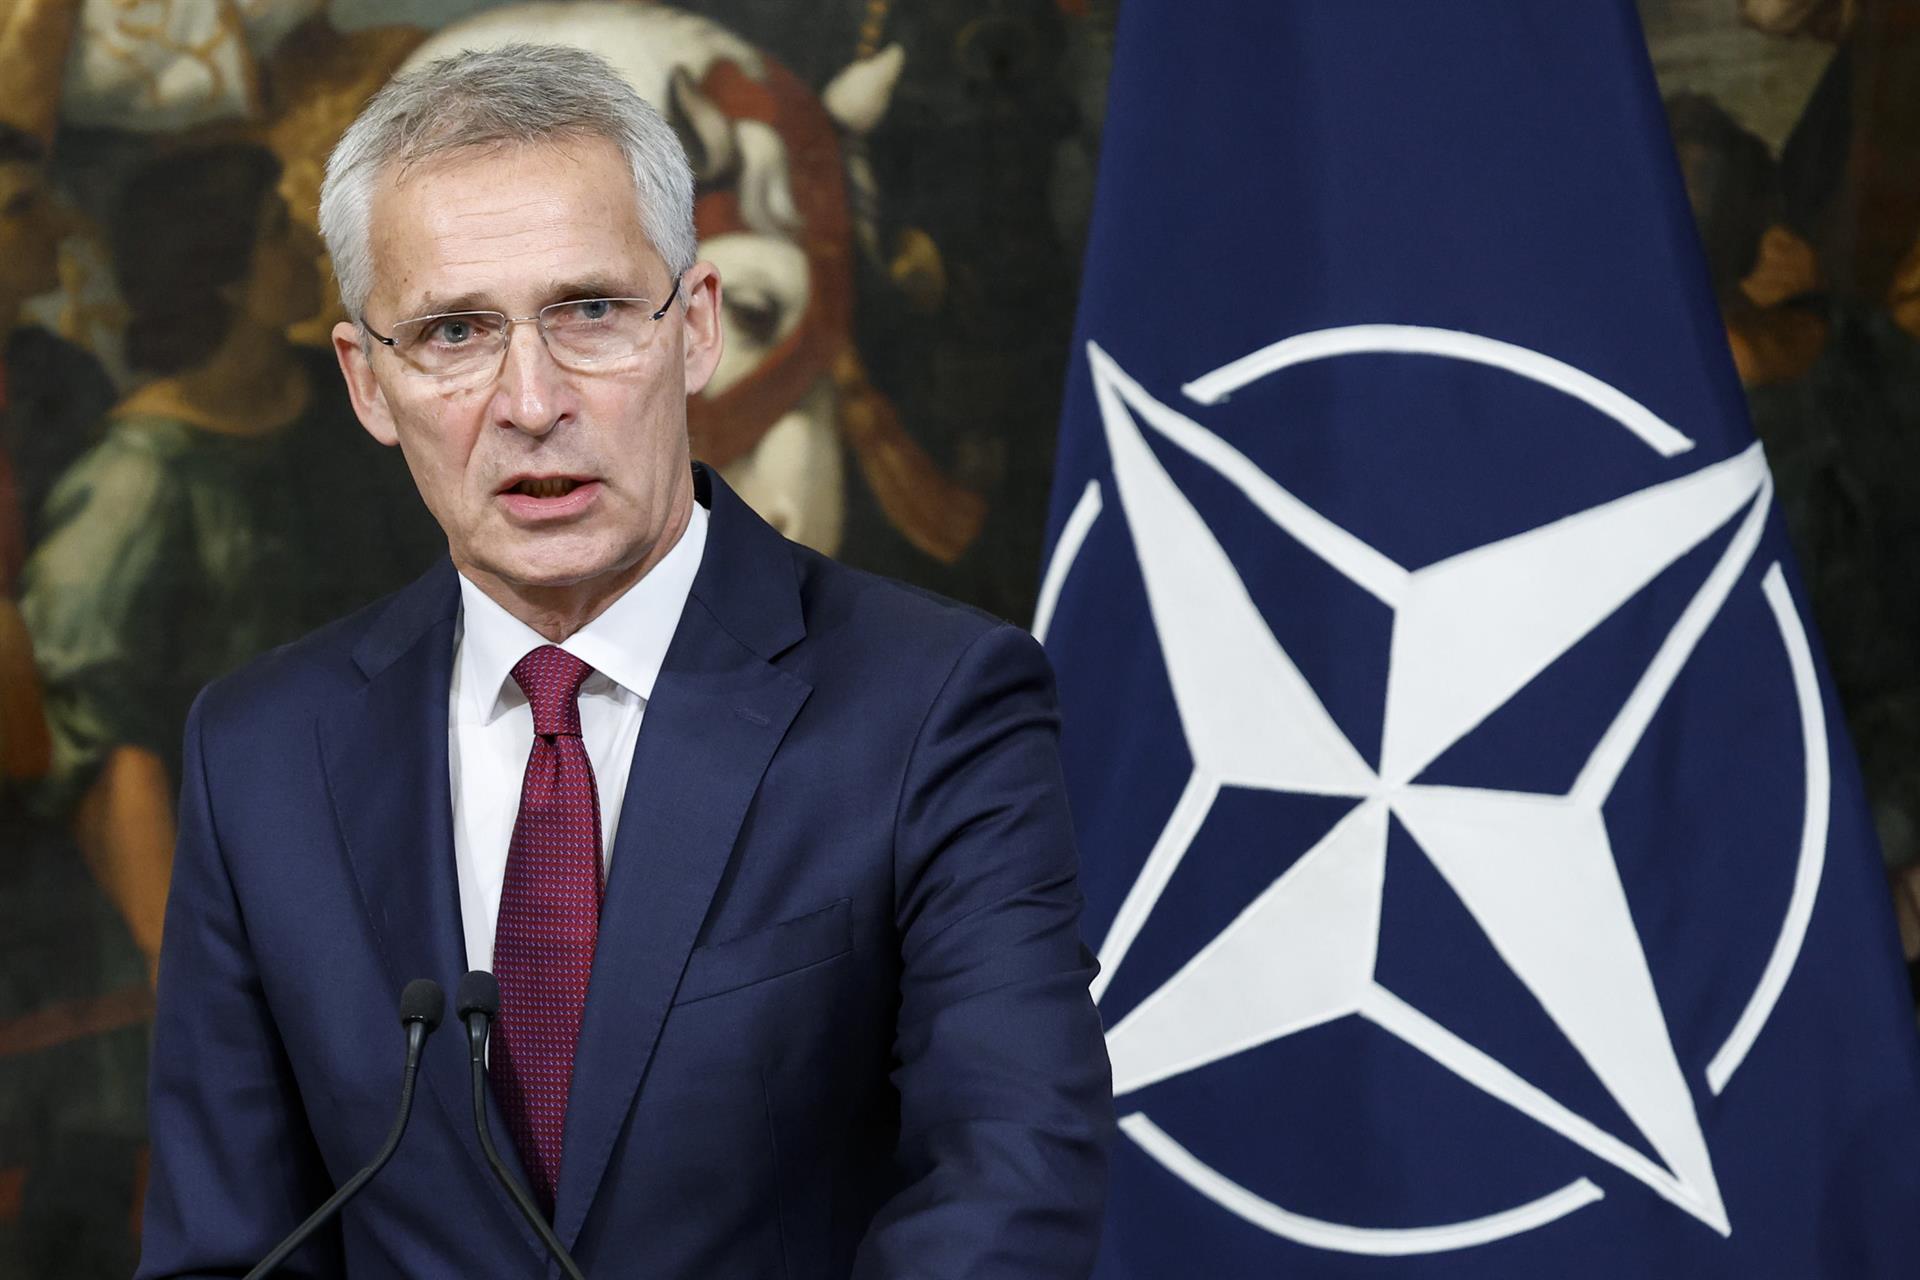 OTAN convocó reunión de “emergencia” para hablar del "incidente" en Polonia